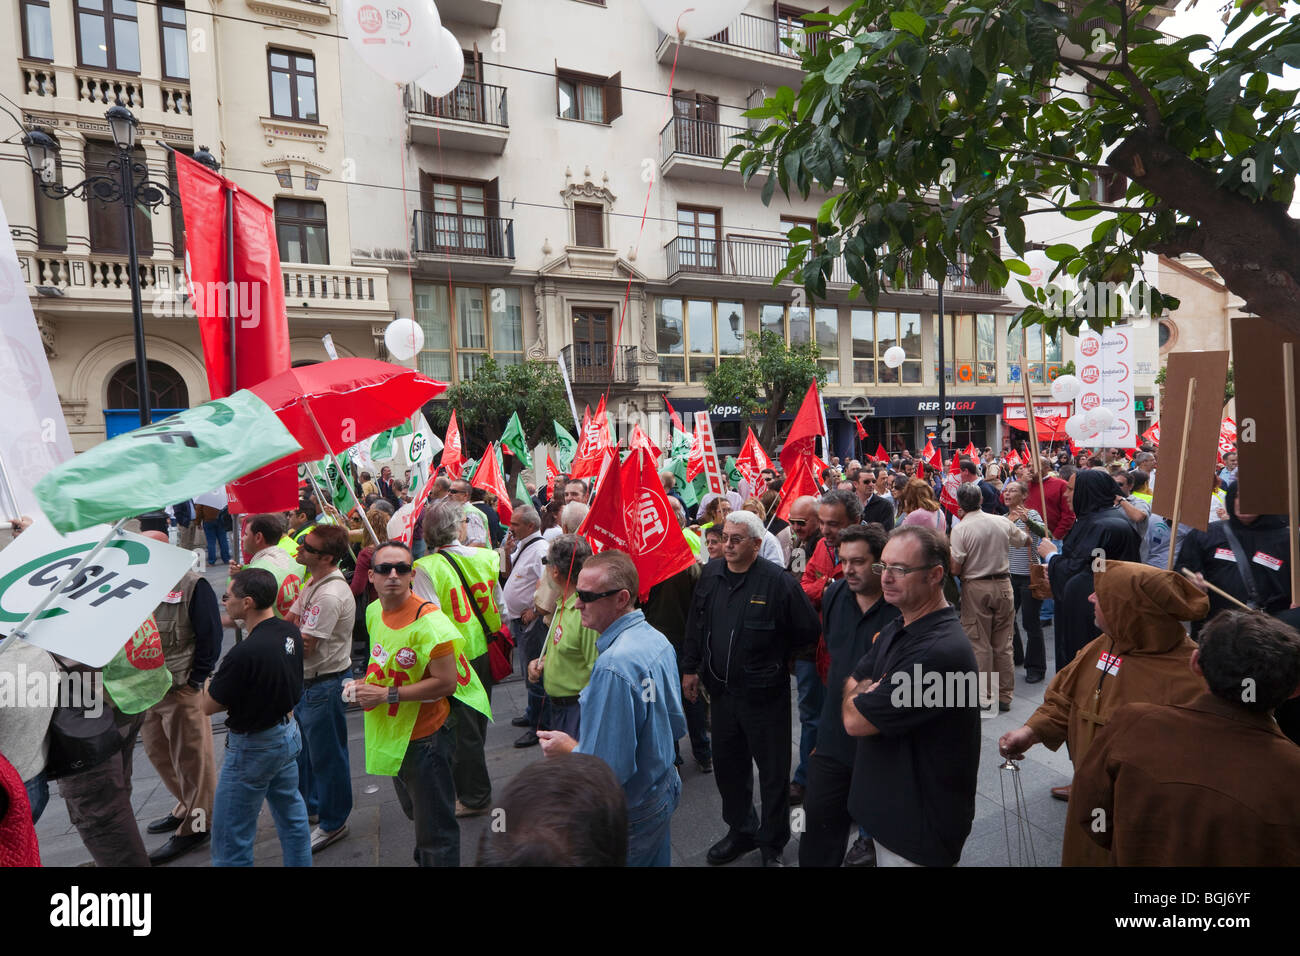 Gewerkschaften März in Sevilla, Spanien, Protest gegen Arbeitslosigkeit und bittet um Unterstützung für öffentliche Arbeitsplätze und weniger Familienunternehmen Stockfoto